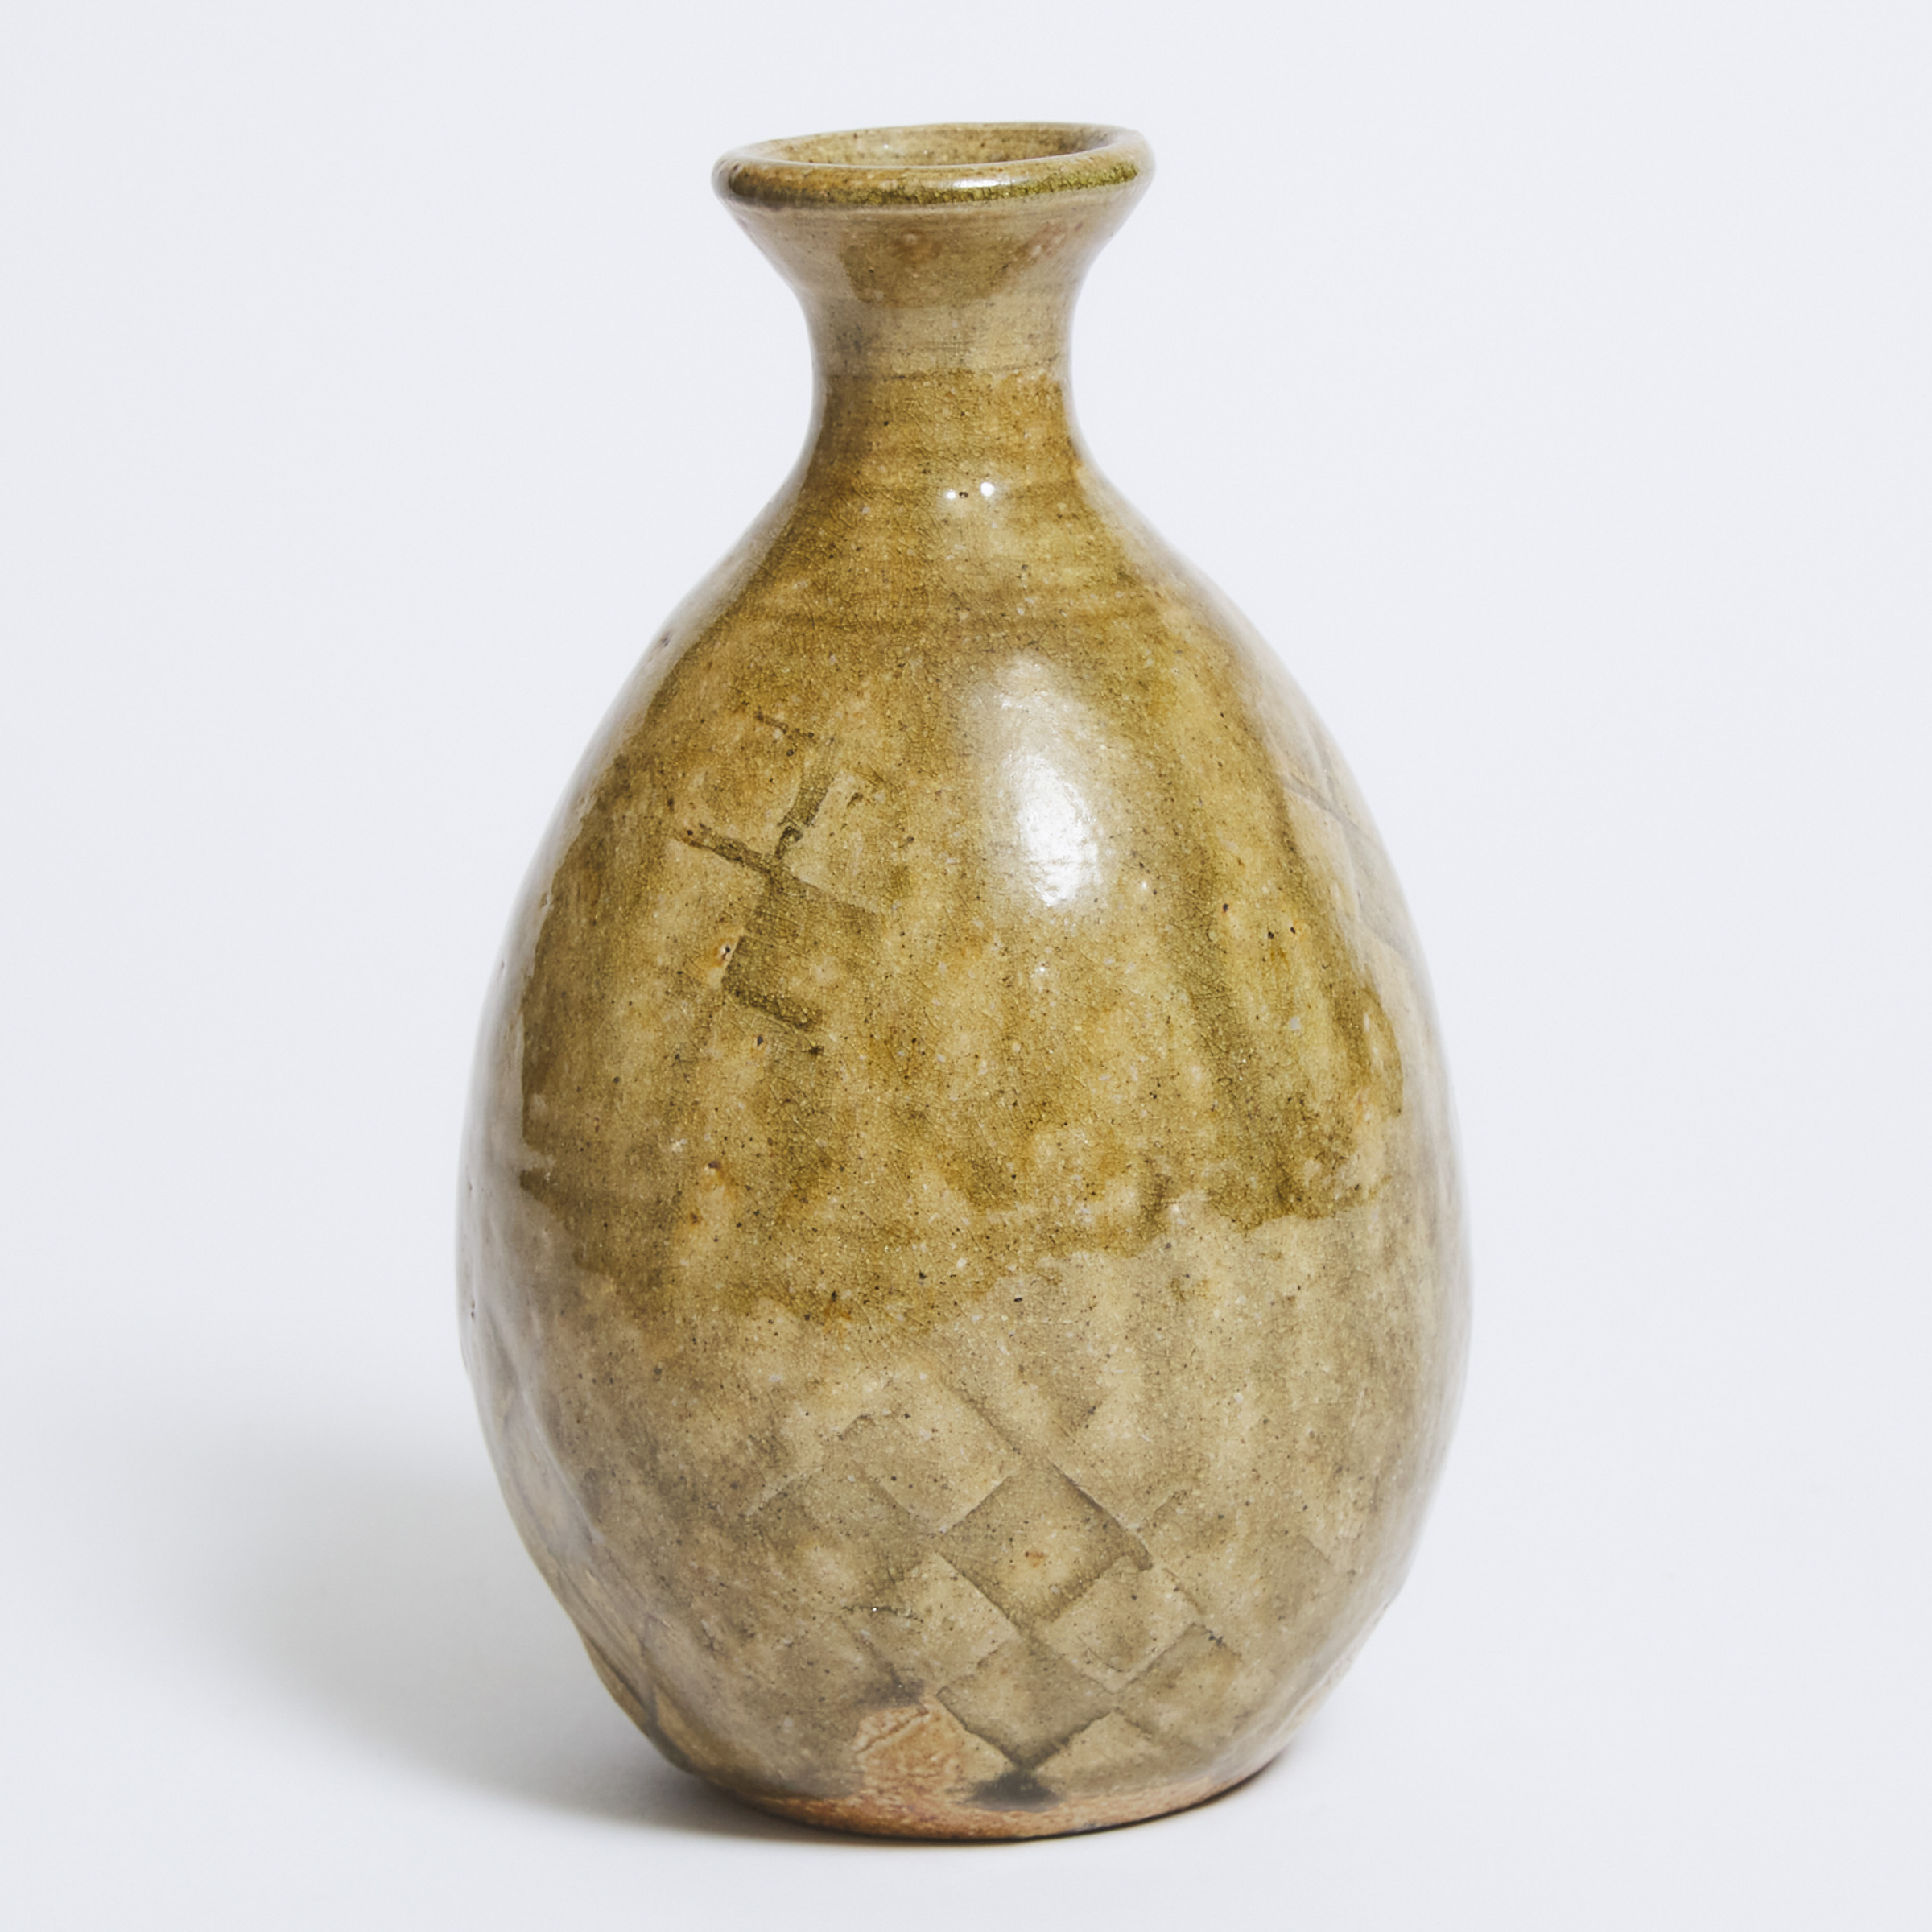 Robert Archambeau (Canadian, 1933-2022), Celadon Glazed Moulded Stoneware Vase, late 20th century